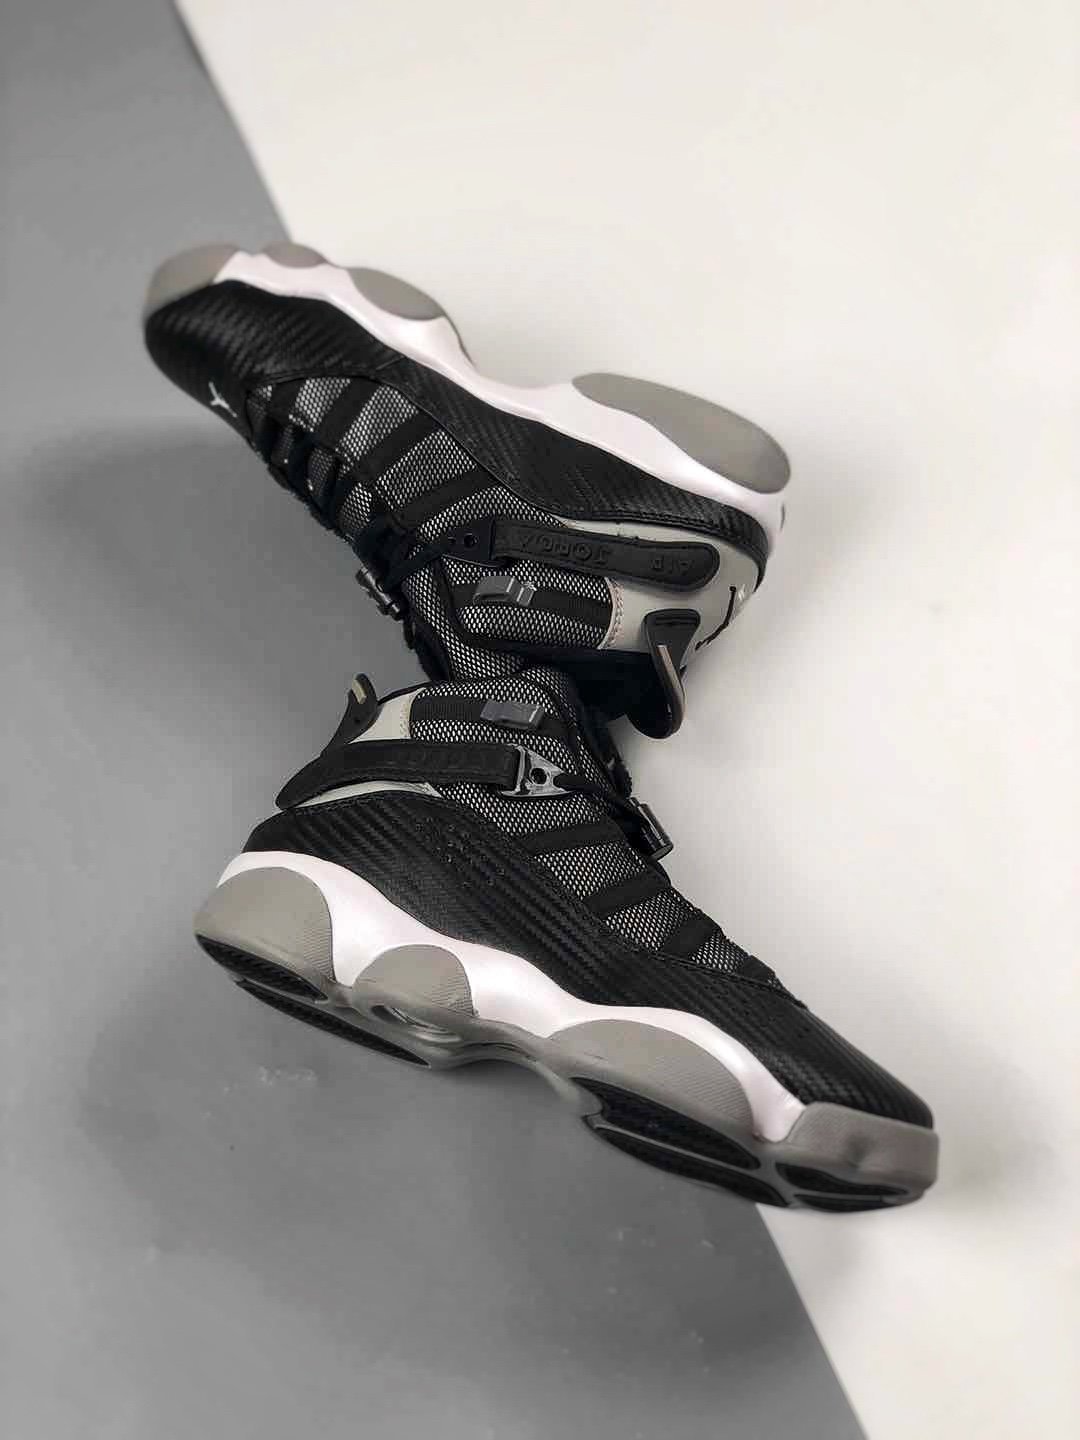 Jordan 6 Rings “Carbon Fiber” 322992-004 For Sale – Sneaker Hello